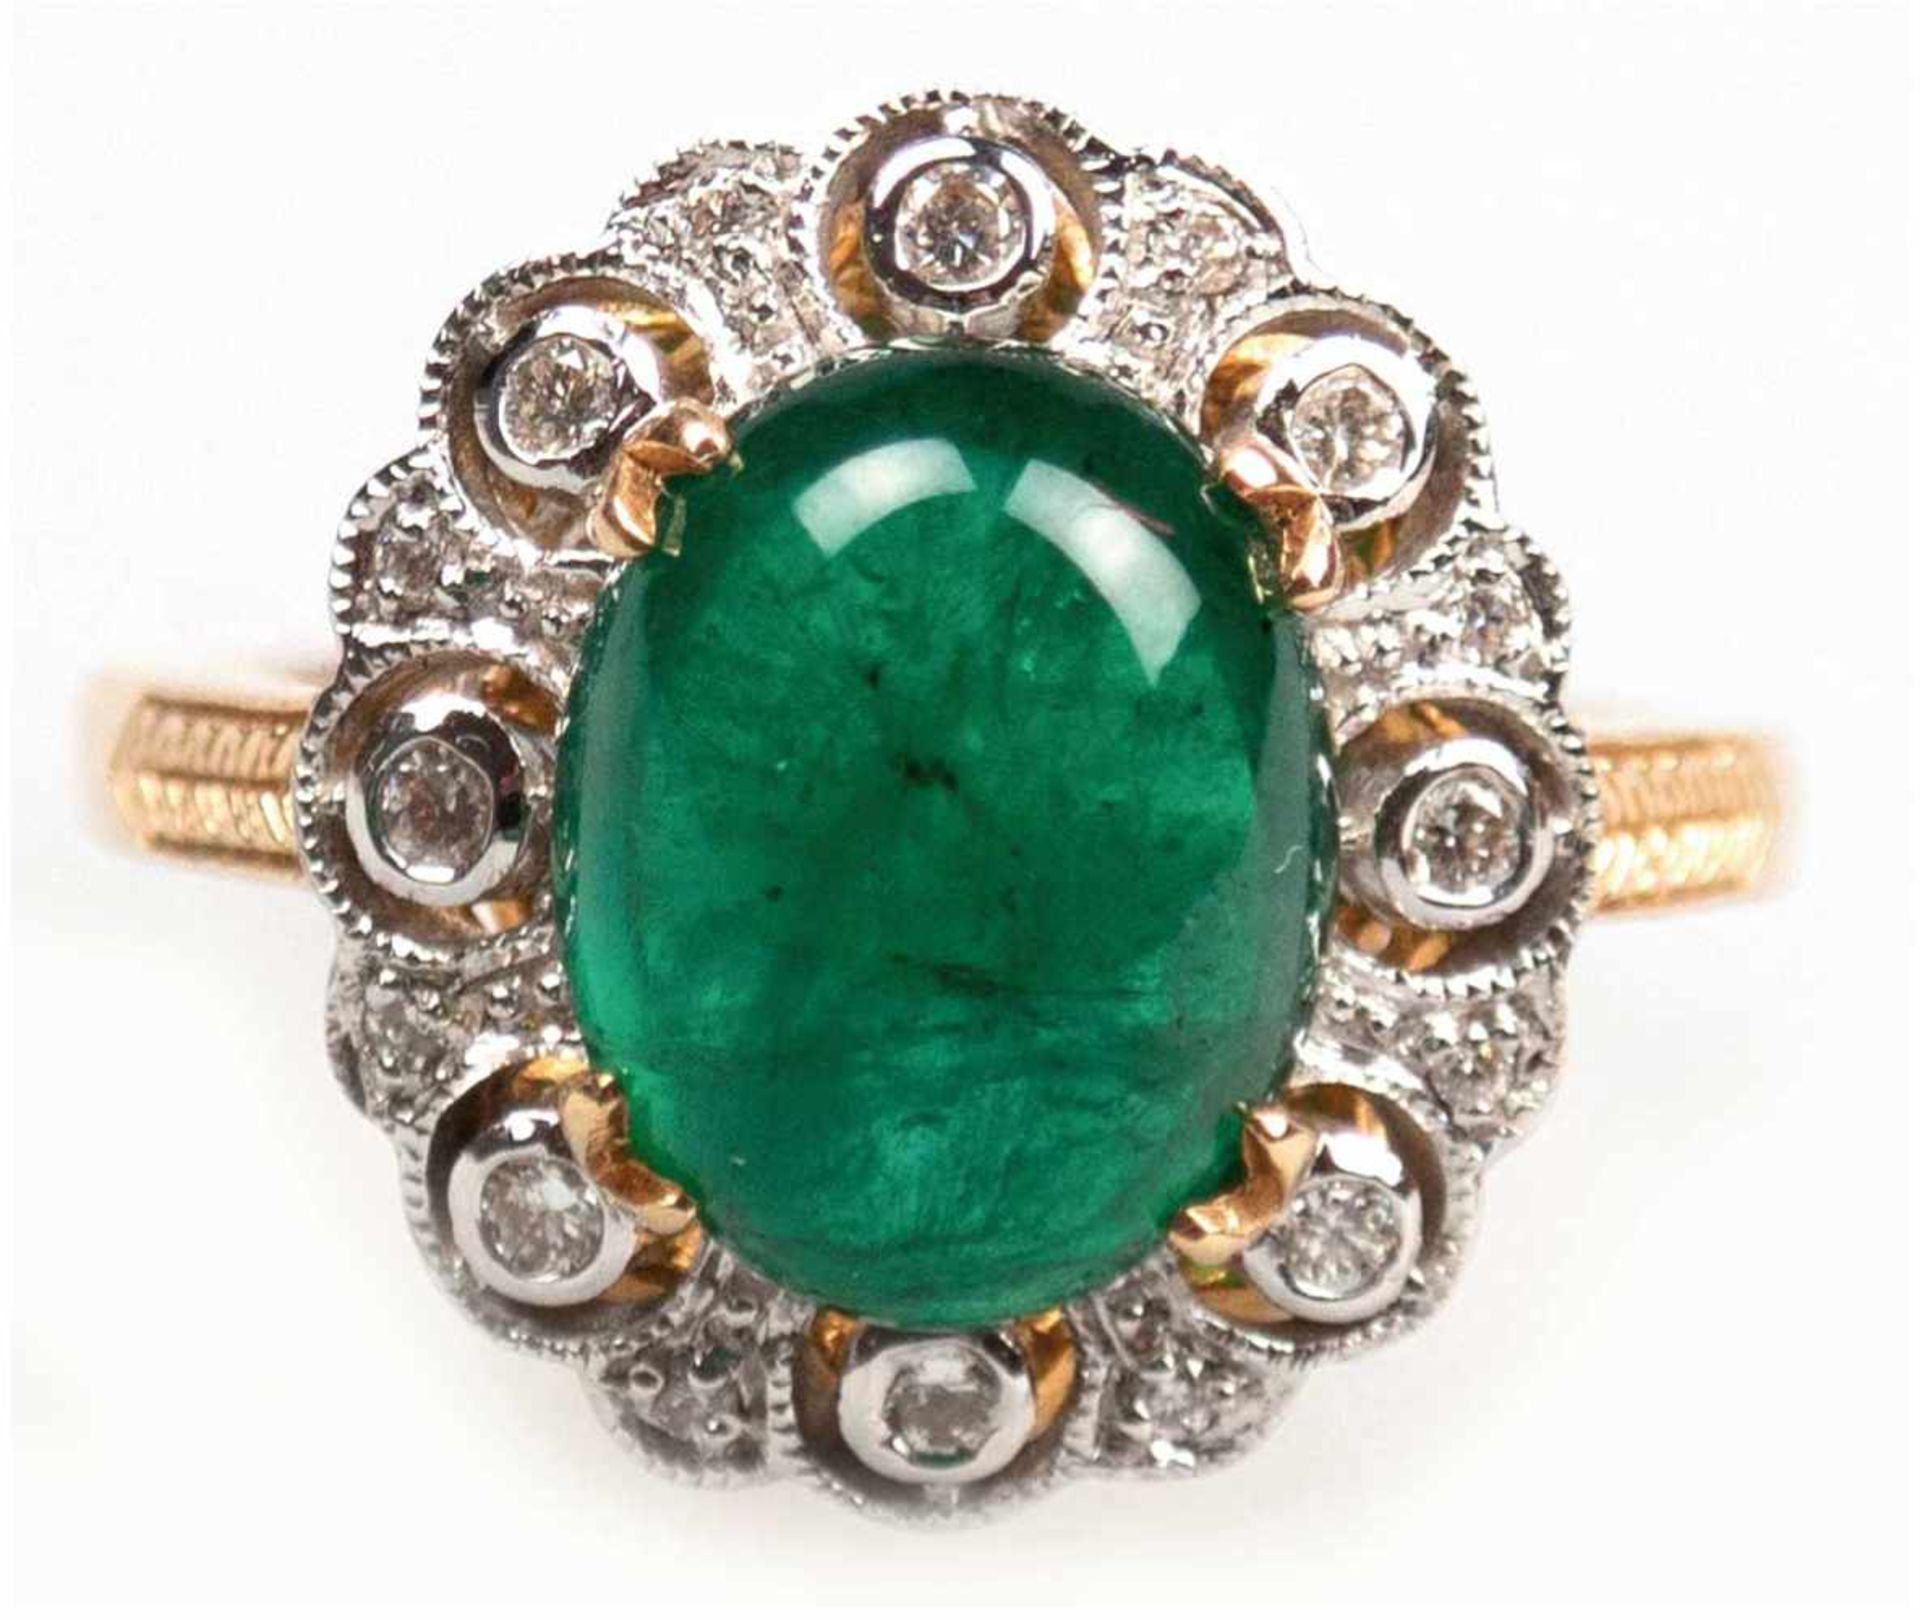 Ring, k GG, ges. 5,7 g, großer Smaragd- Cabochon von 4,02 ct., mit natürlichem Jardin,Brillanten 0,